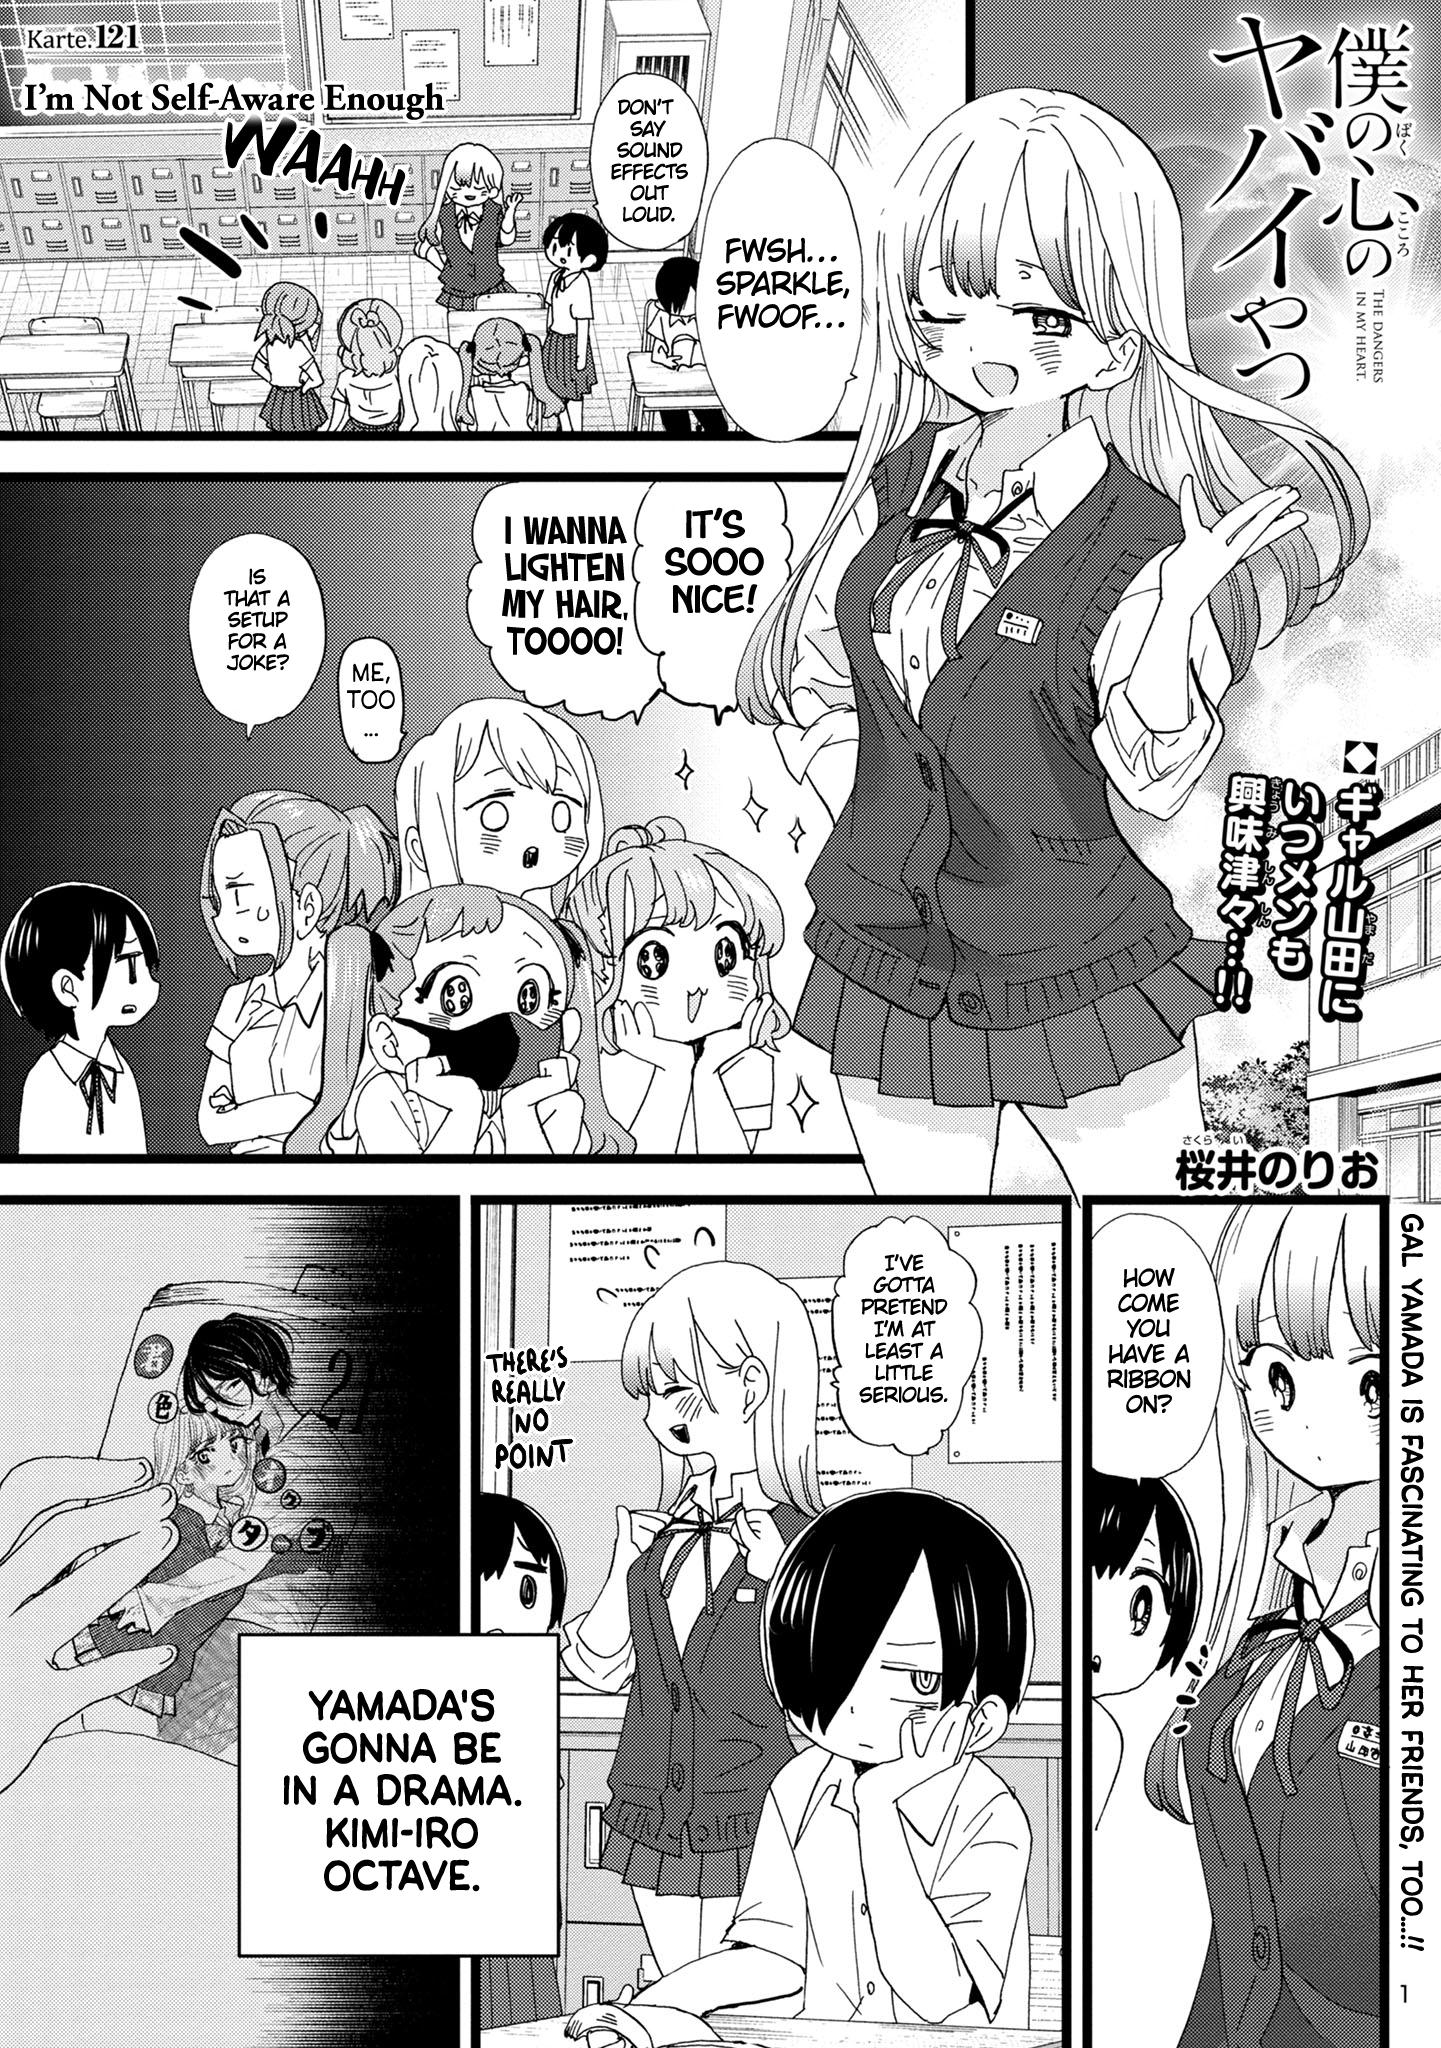 Boku no Kokoro no Yabai Yatsu Vol.7 Ch.89 Page 1 - Mangago